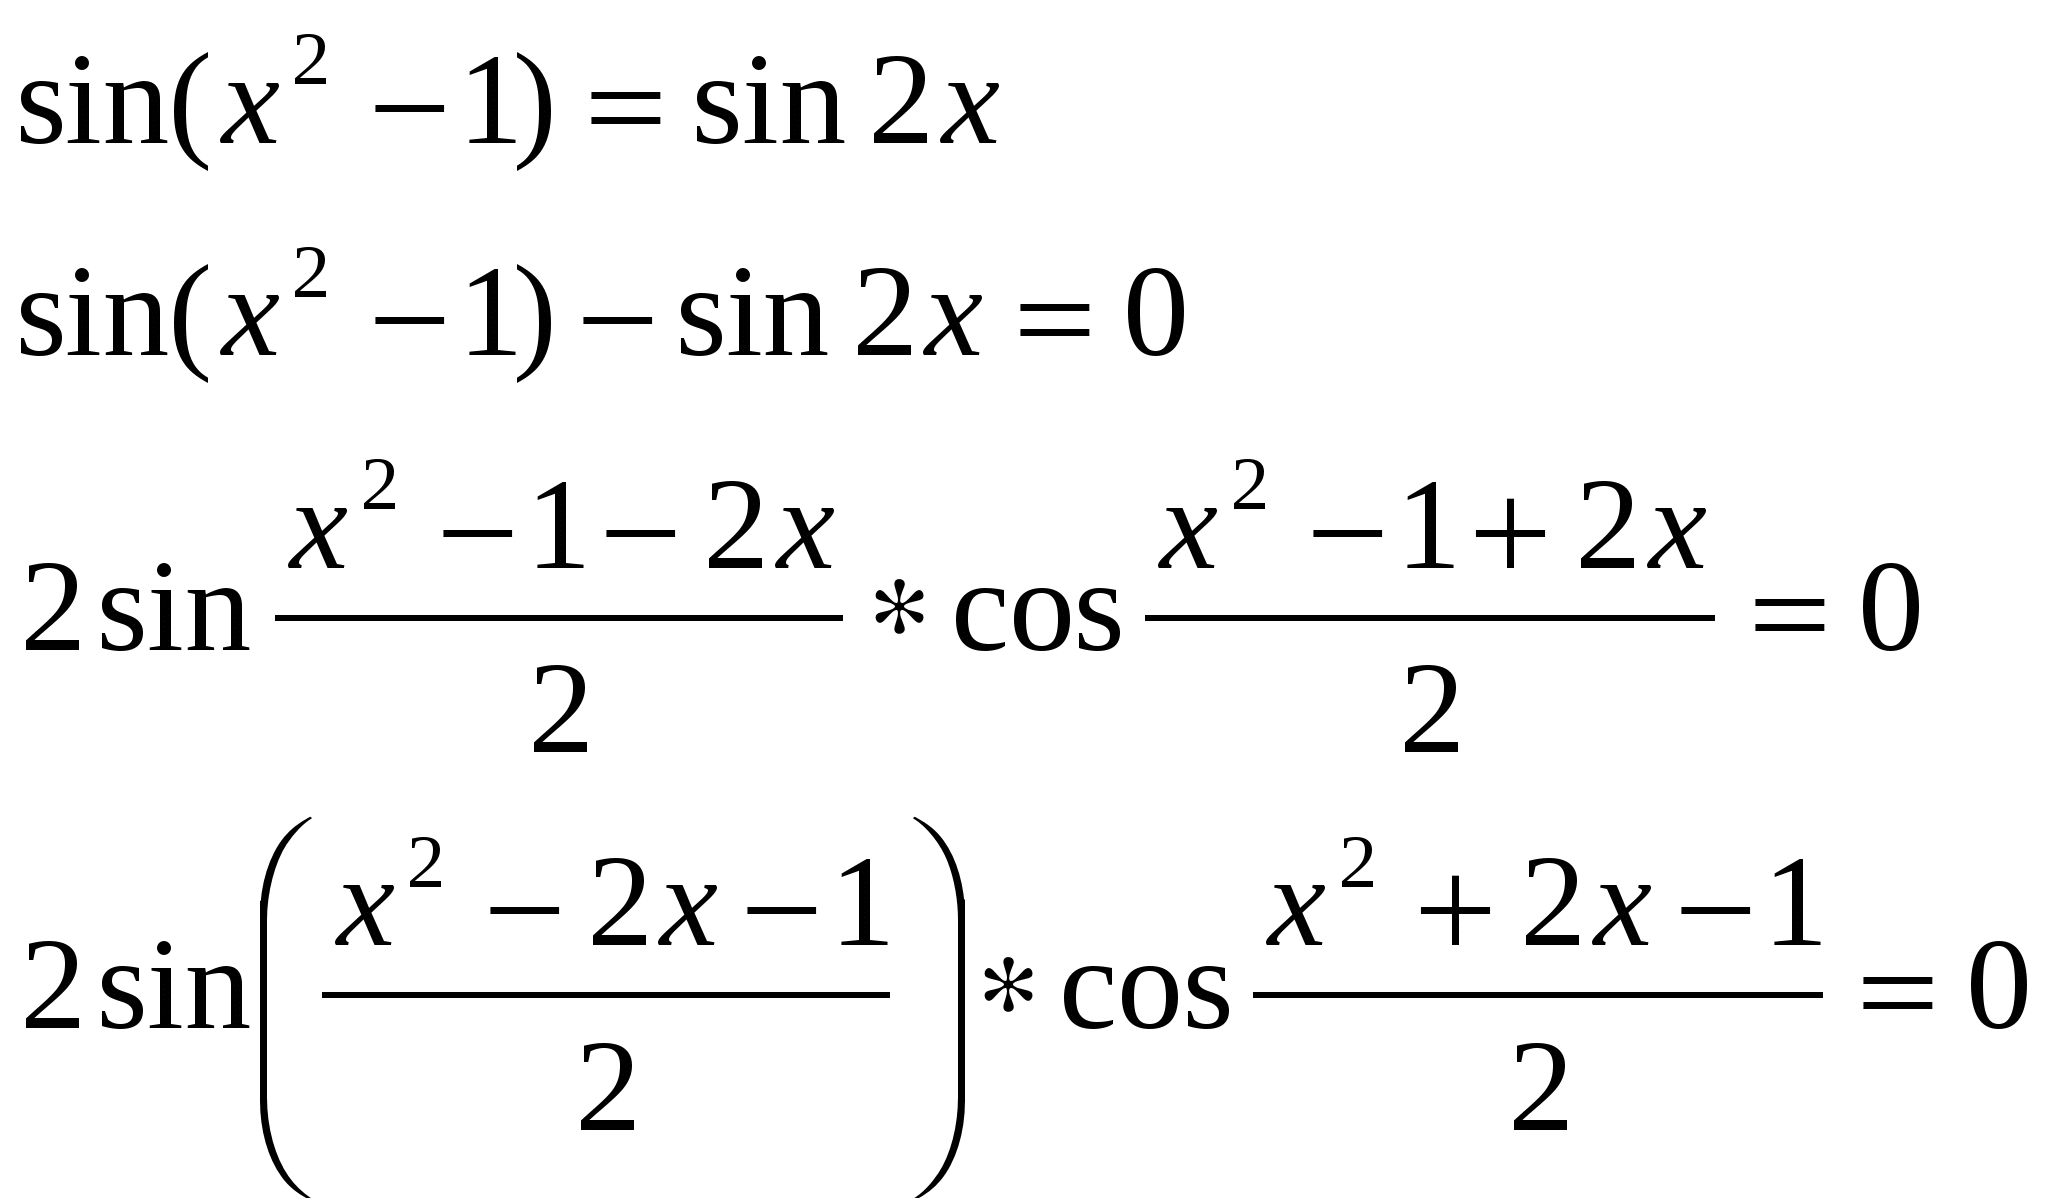 Урок алгебры в 10 классе. Методы решения тригонометрический уравнений.